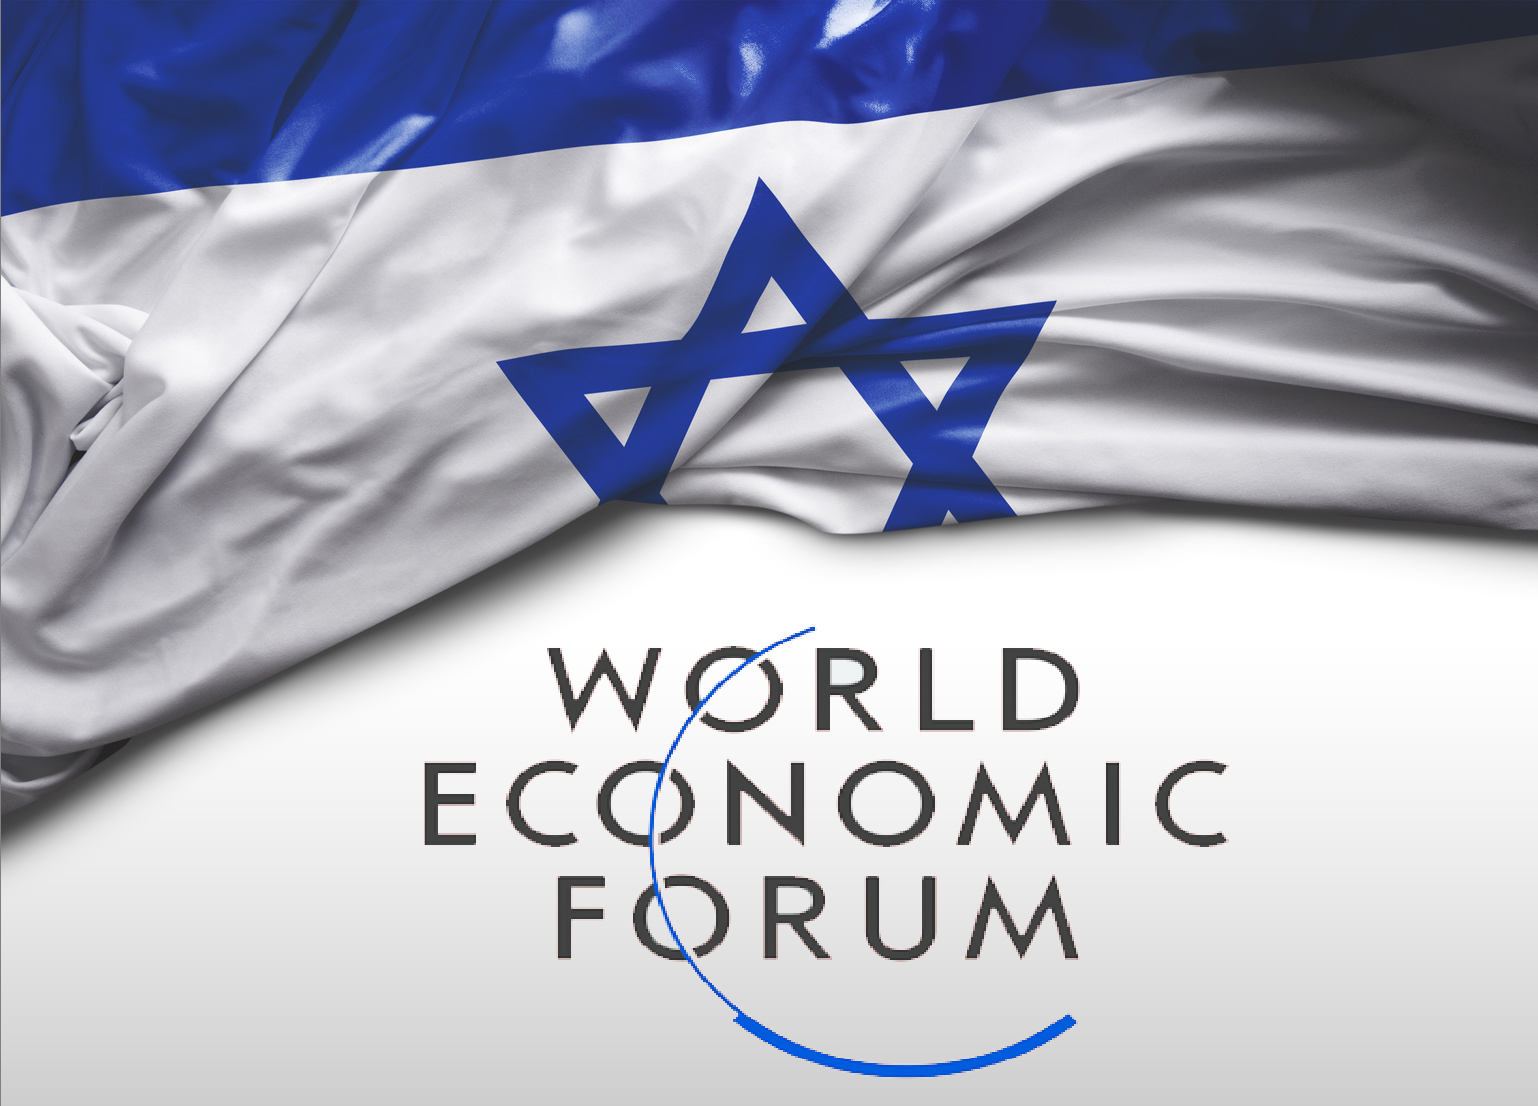 הזמנה להשתתף בסקר התחרותיות העולמי של הפורום הכלכלי העולמי 2020